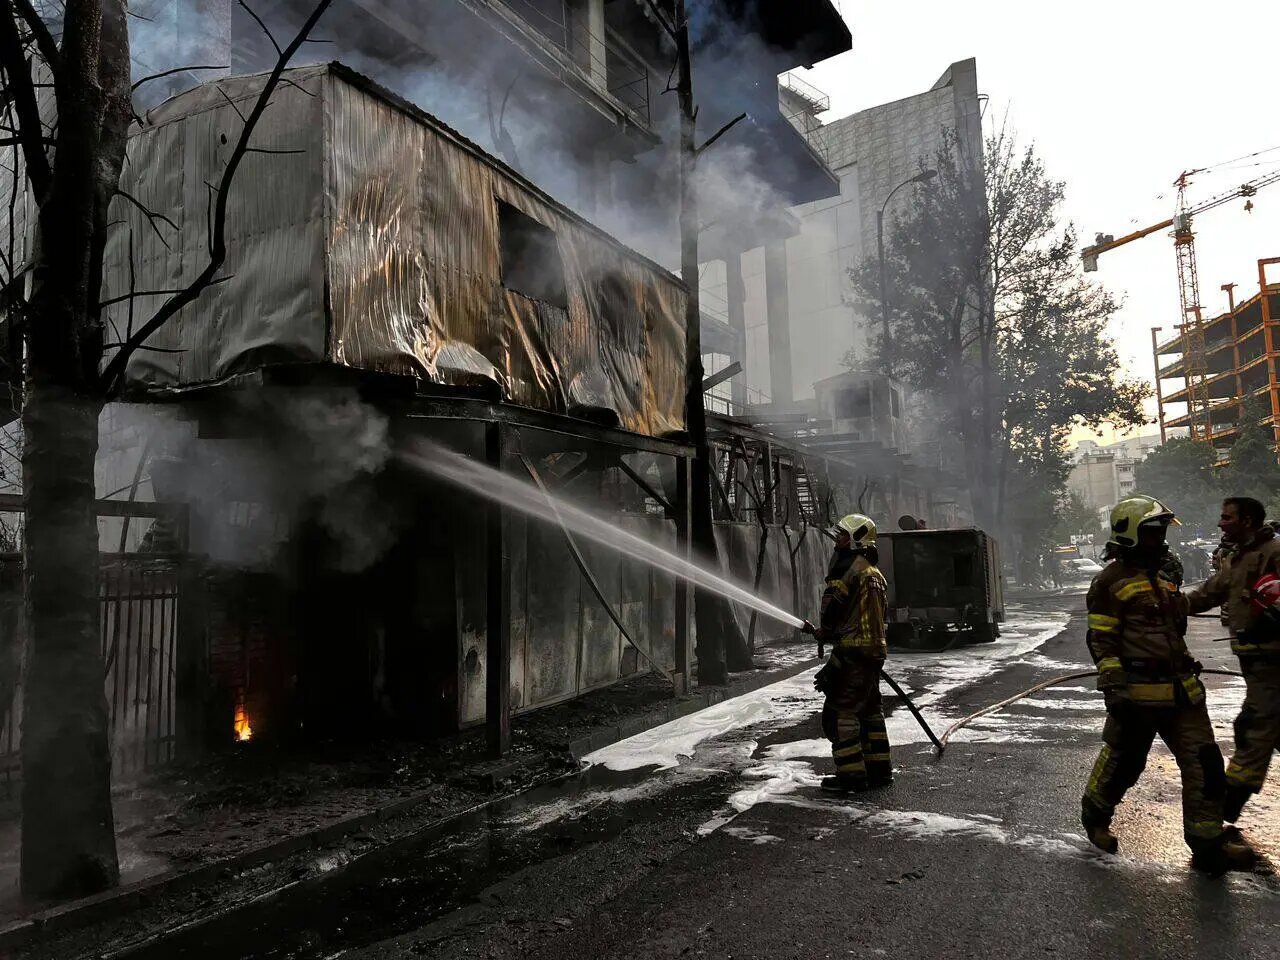 سازمان آتش نشانی درباره فیلم آتش سوزی در خیابان نیاوران توضیح داد